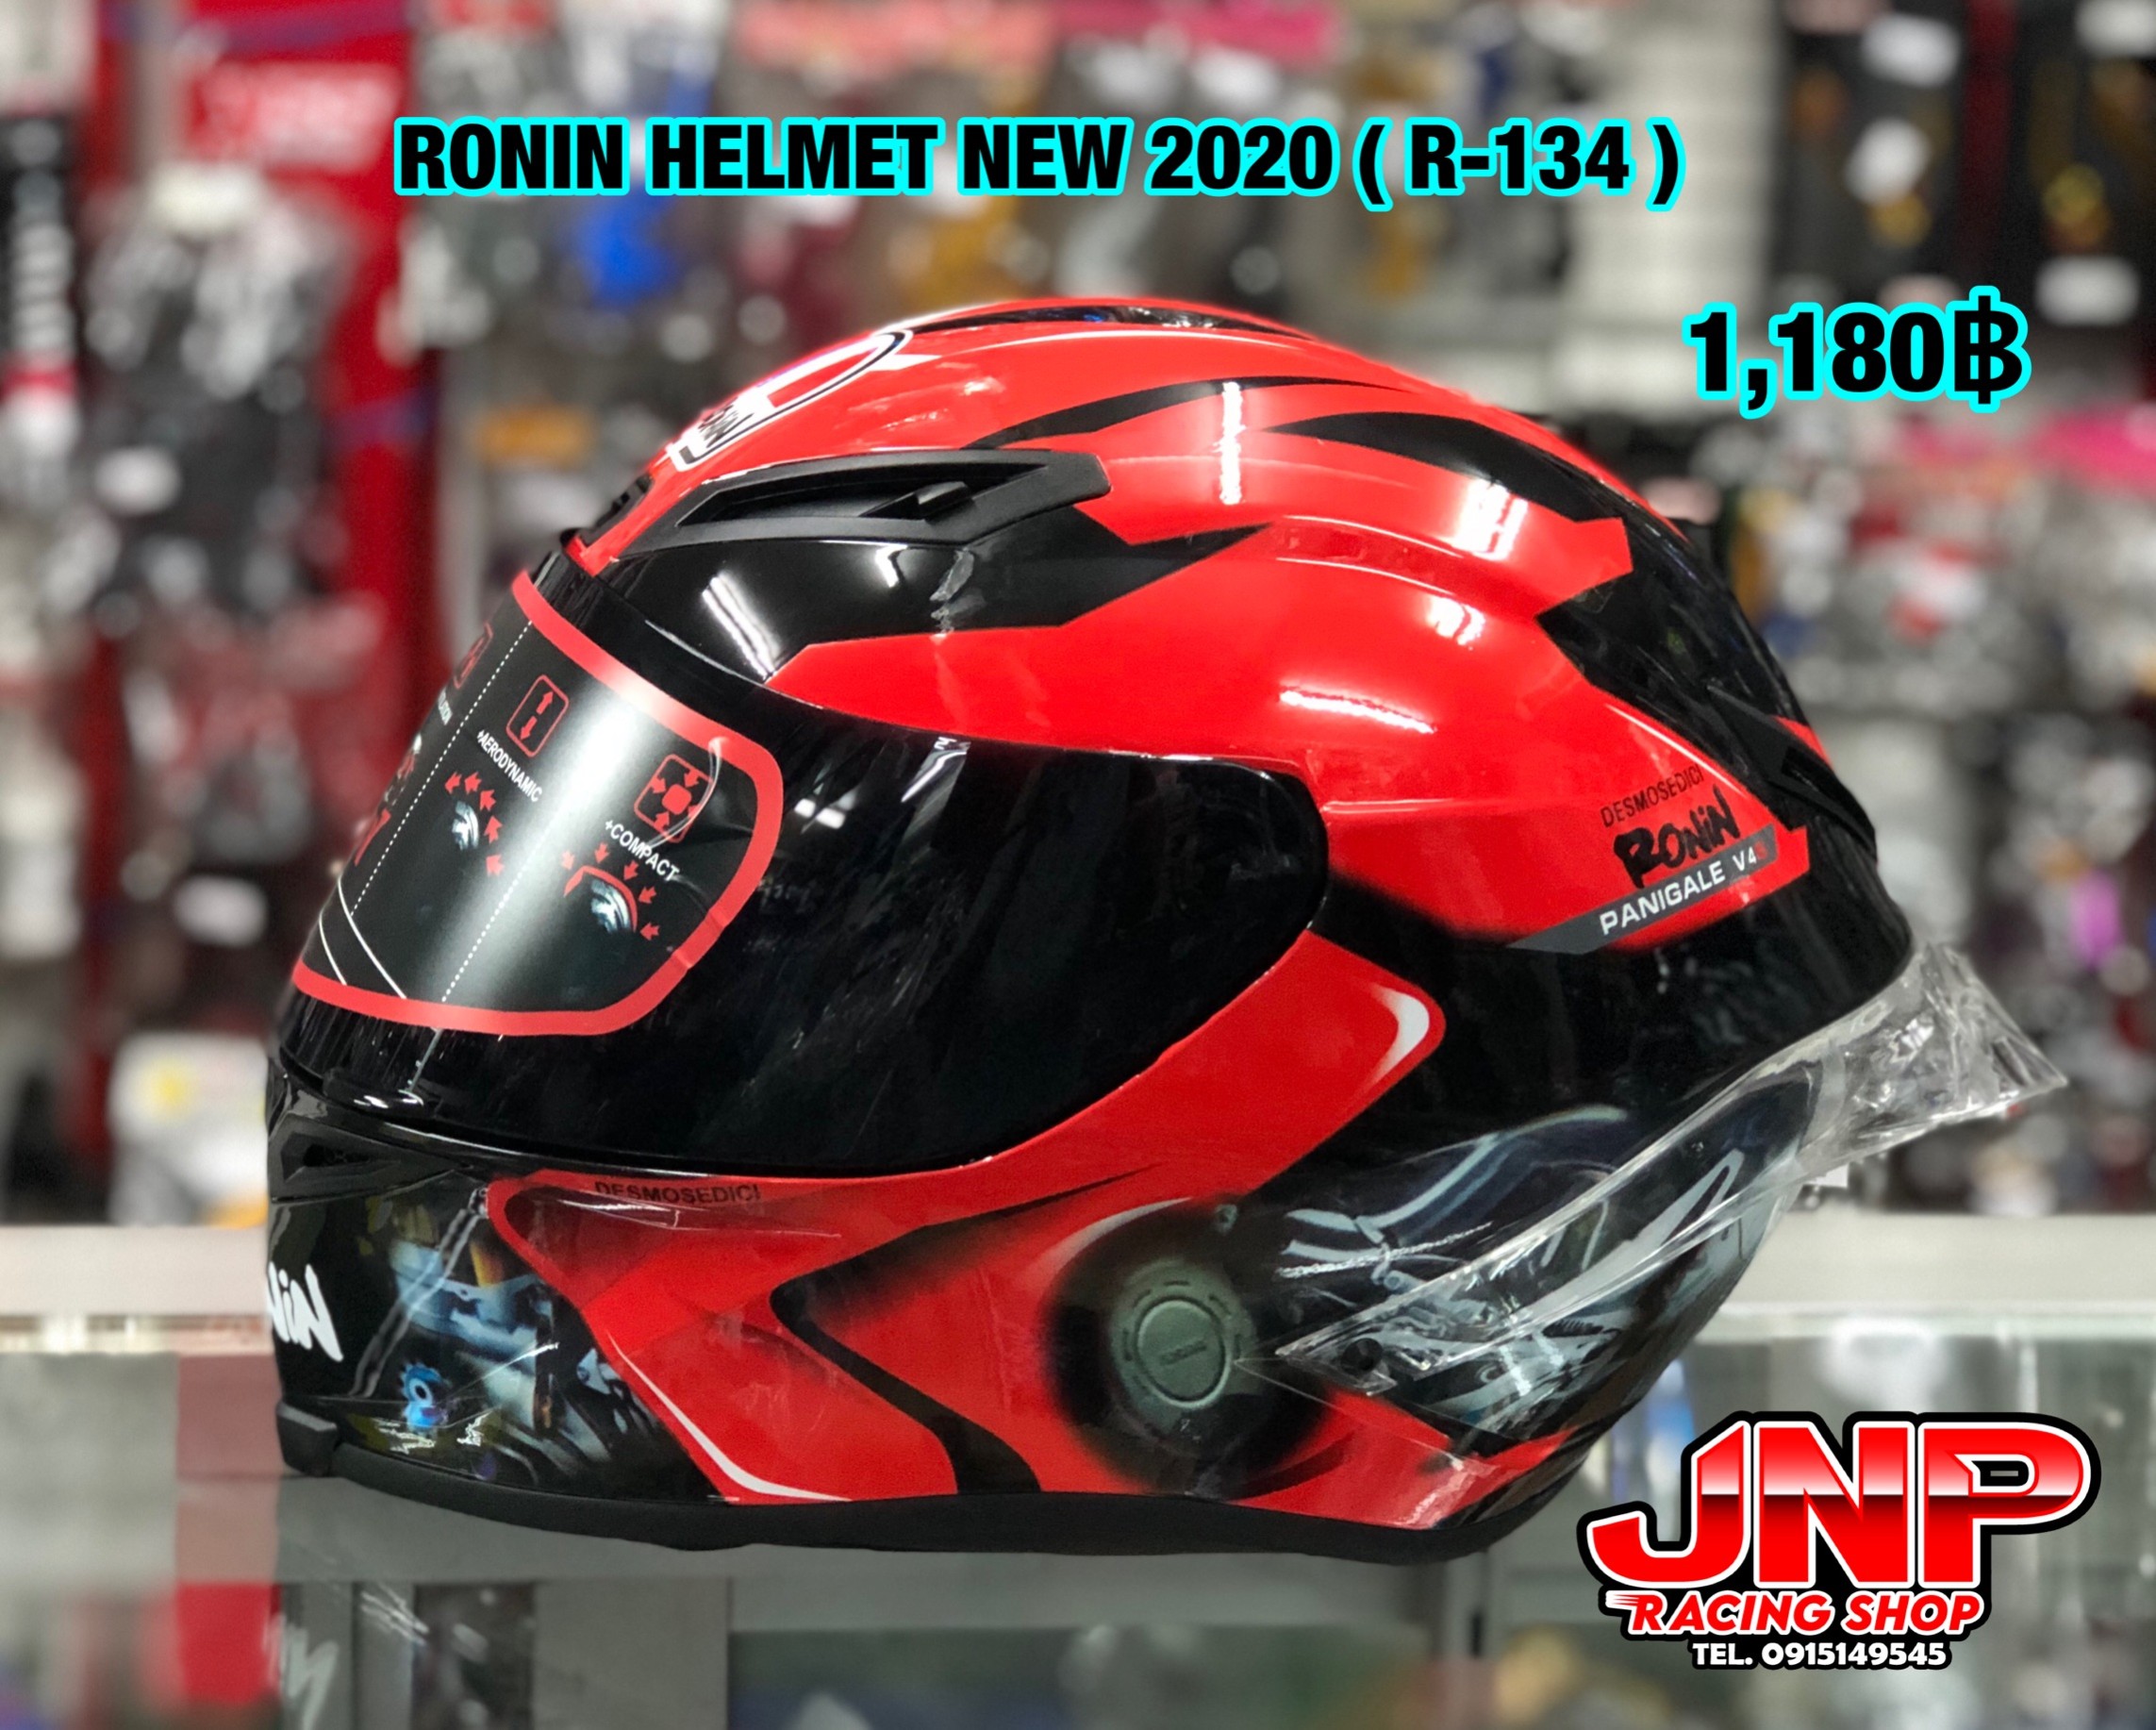 หมวกกันน็อค Ronin helmet new 2020 (R-134)